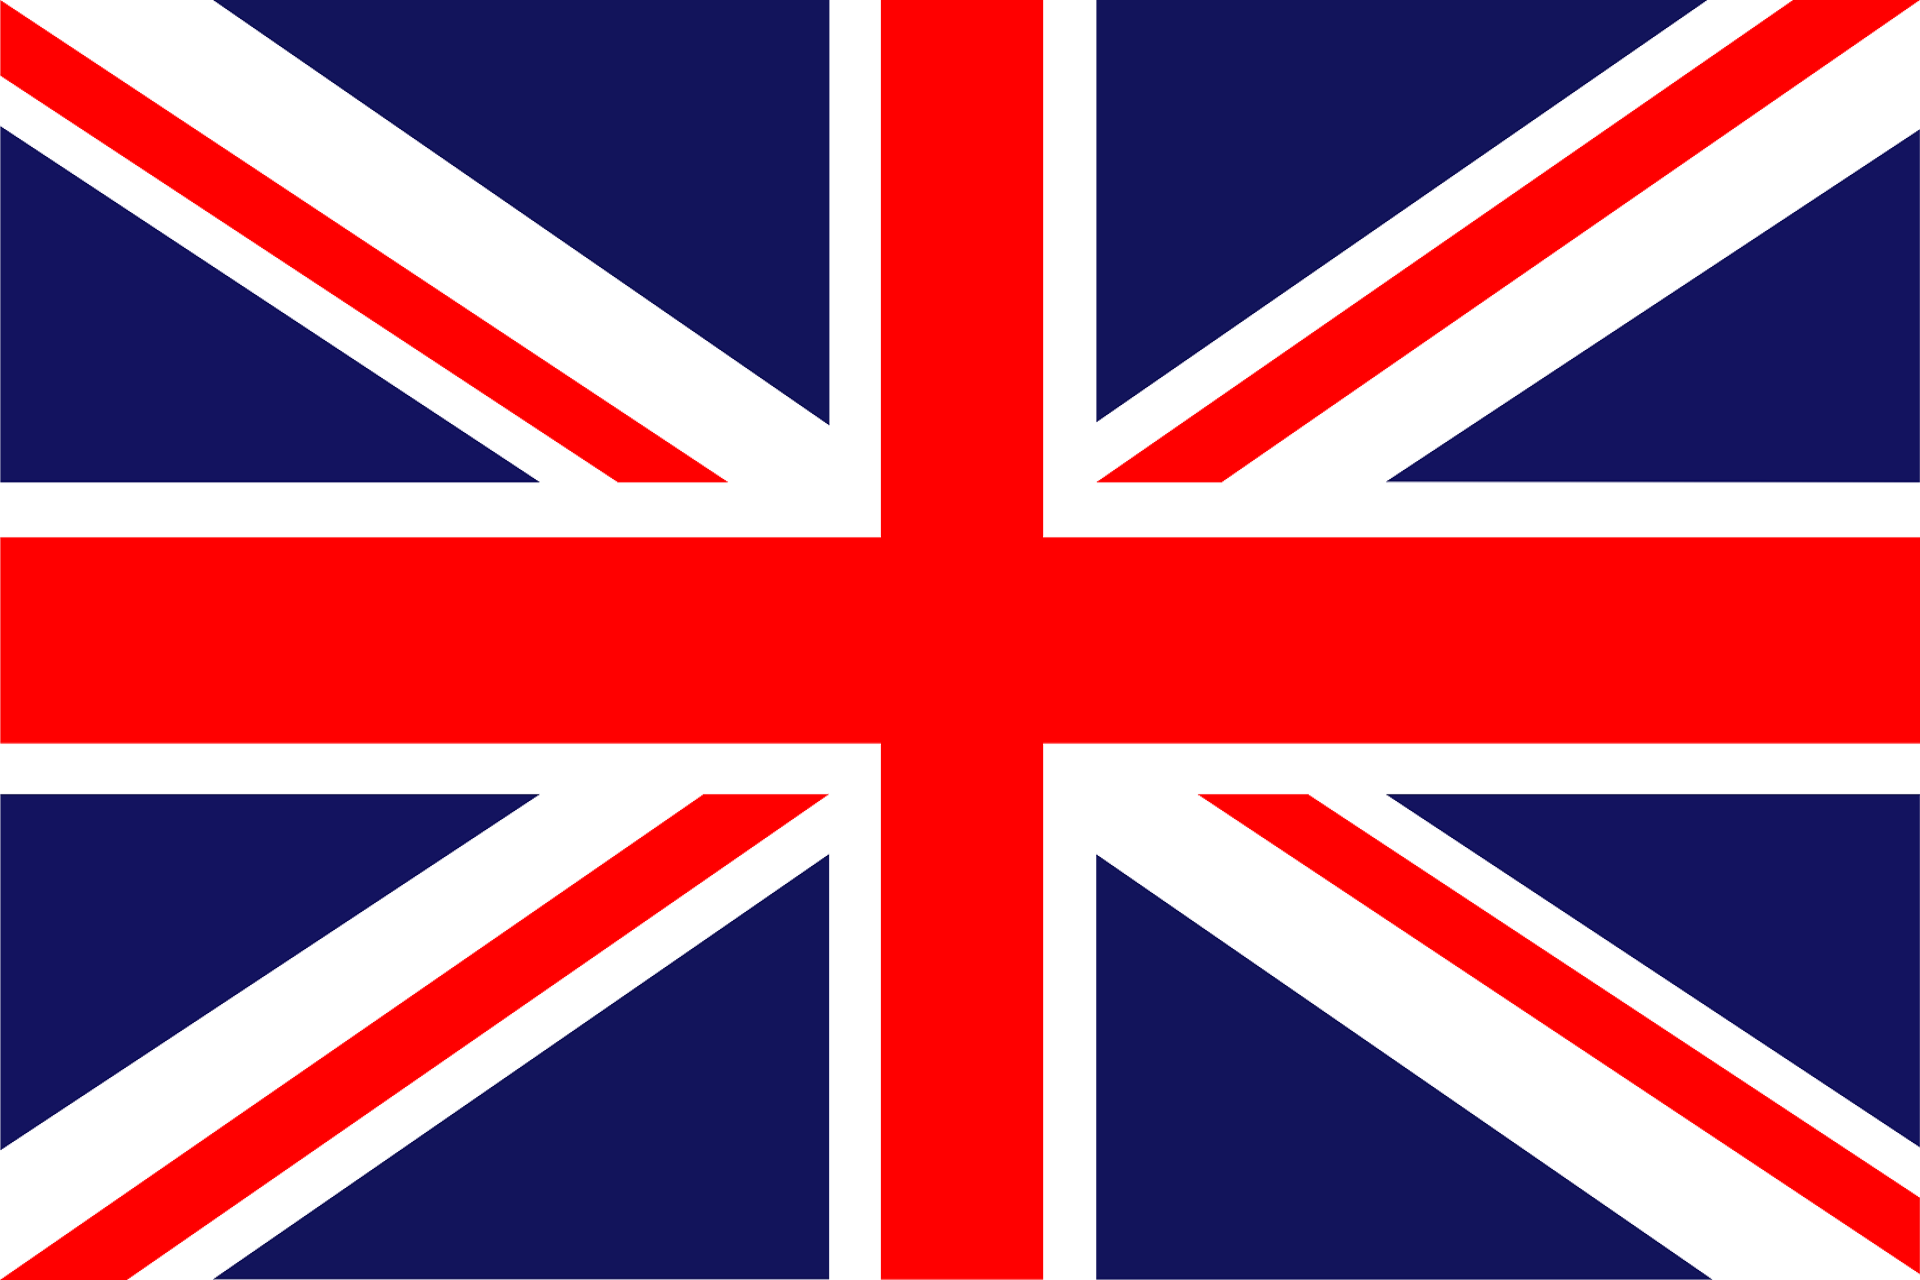 UK flag - Amazon Shop - Mars EC